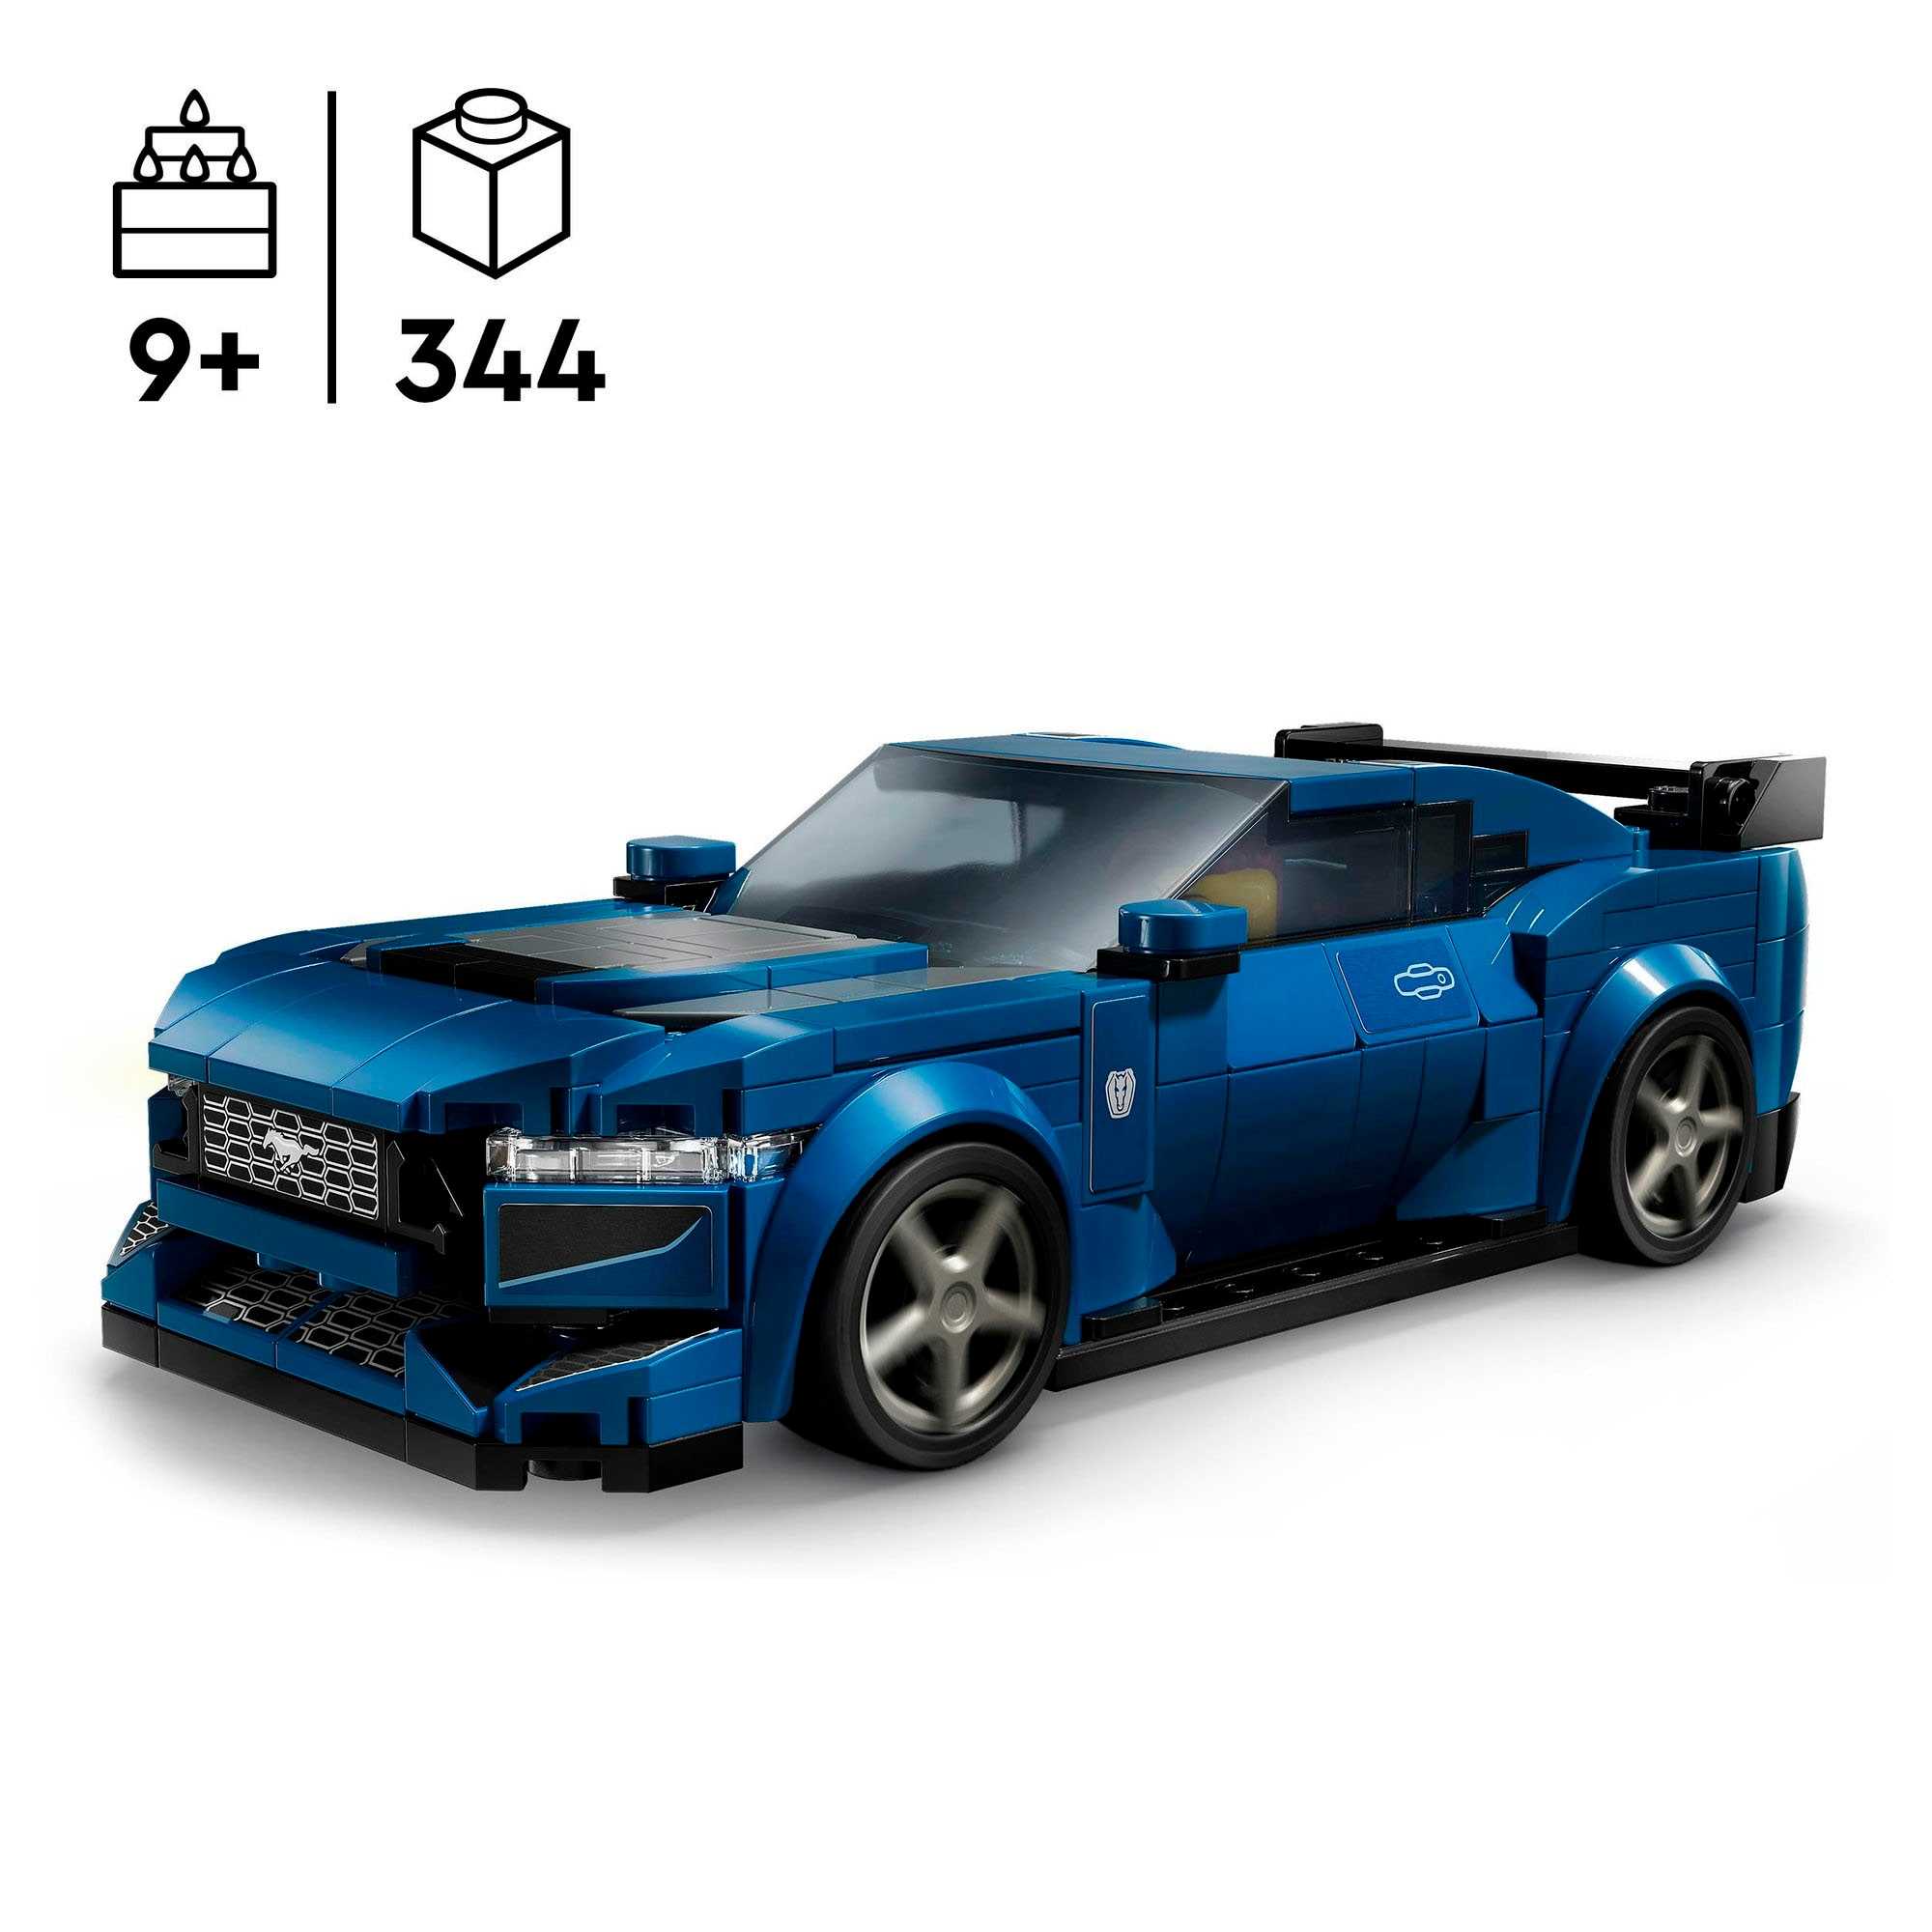 LEGO® Konstruktionsspielsteine »Ford Mustang Dark Horse Sportwagen (76920), LEGO Speed® Champions«, (344 St.), Made in Europe